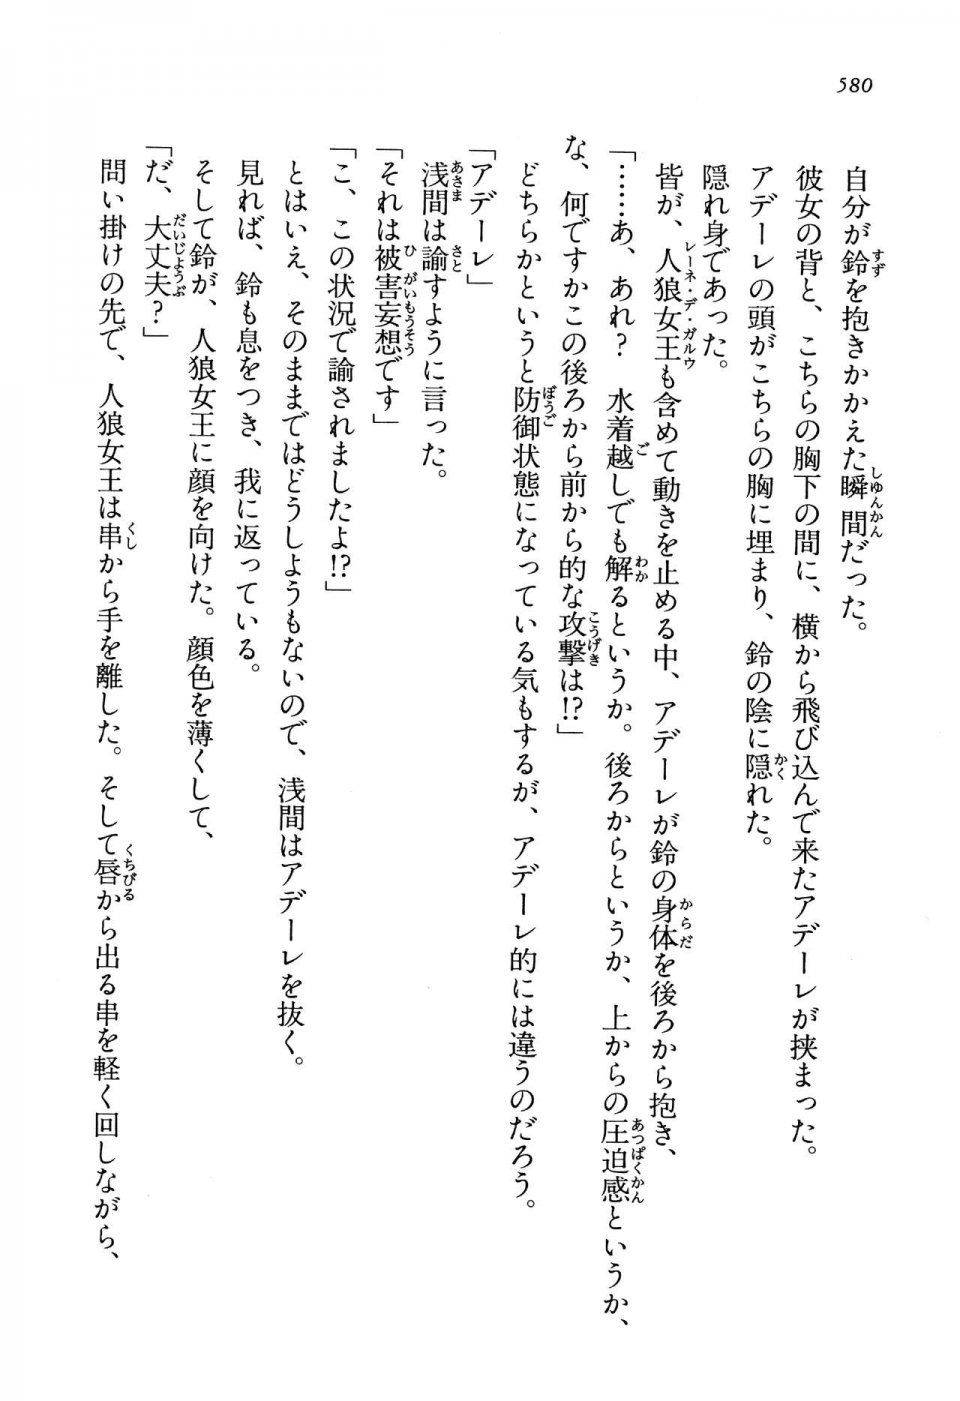 Kyoukai Senjou no Horizon LN Vol 13(6A) - Photo #580